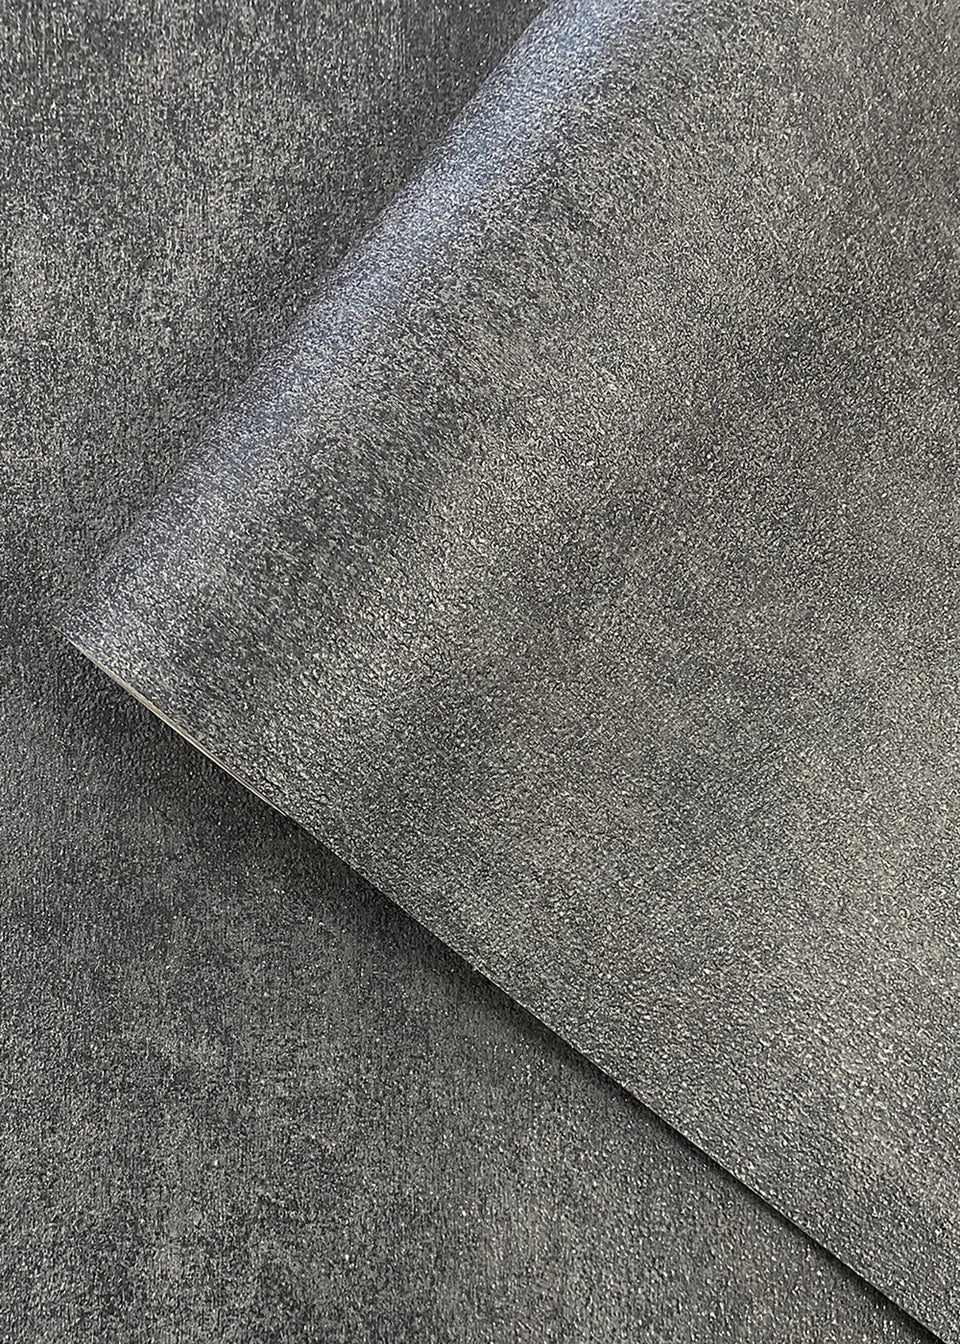 Muriva Axton Texture Wallpaper